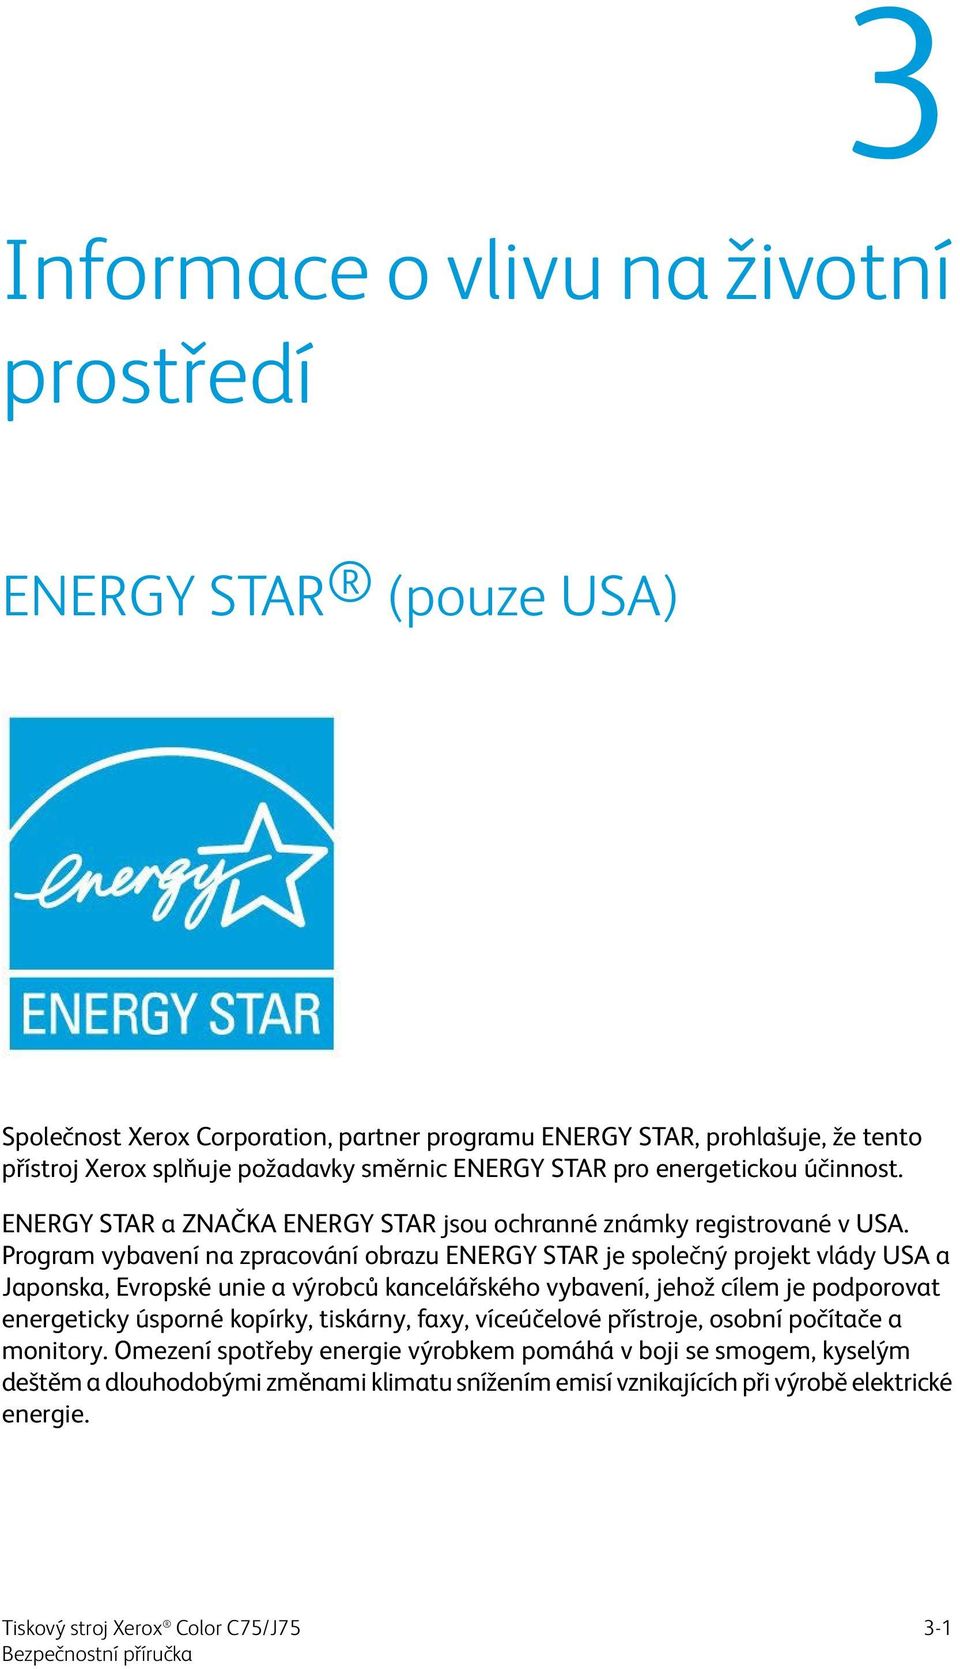 Program vybavení na zpracování obrazu ENERGY STAR je společný projekt vlády USA a Japonska, Evropské unie a výrobců kancelářského vybavení, jehož cílem je podporovat energeticky